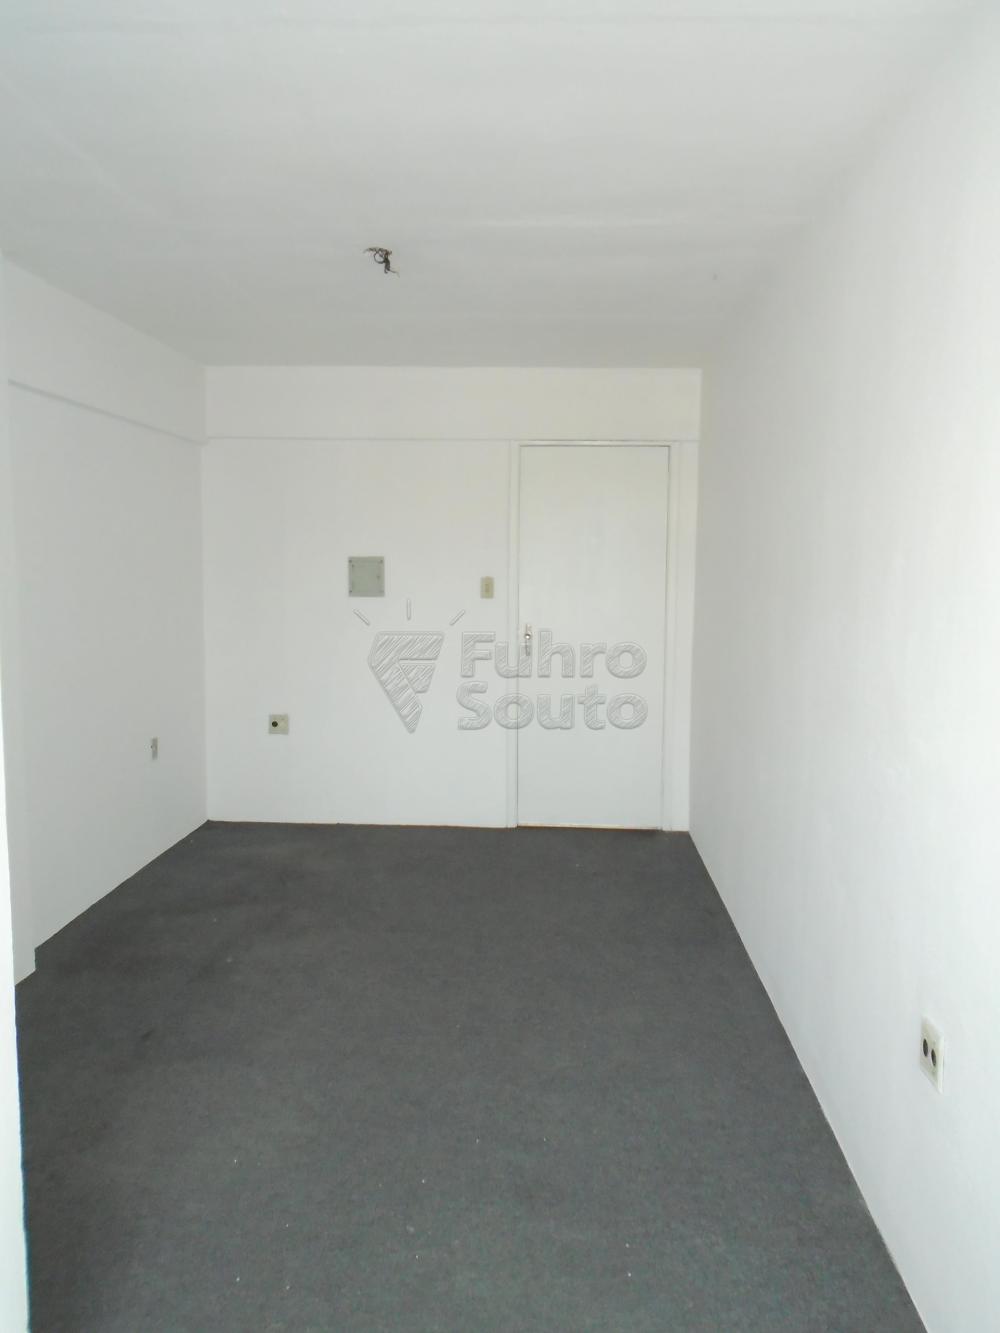 Alugar Comercial / Sala em Condomínio em Pelotas R$ 400,00 - Foto 3